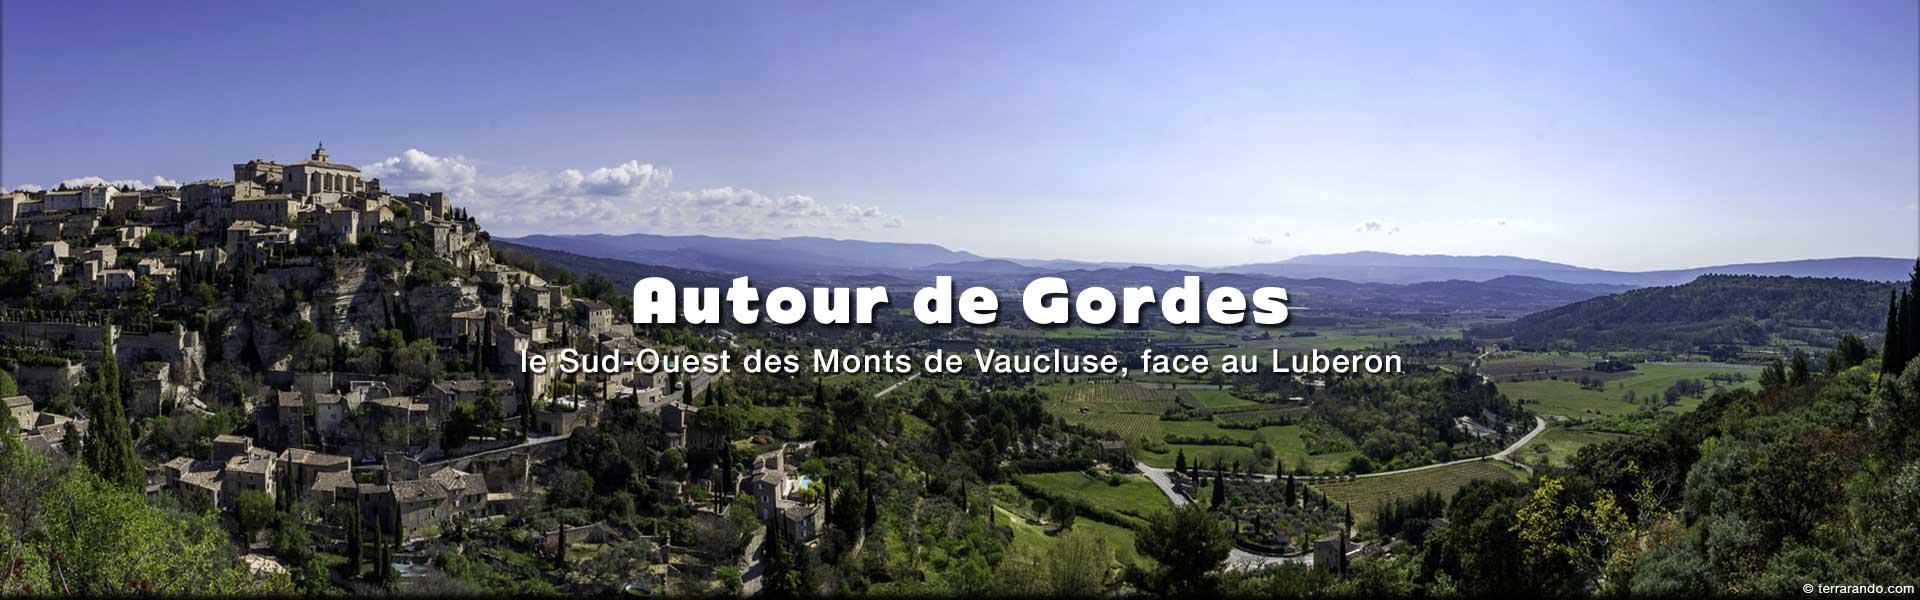 week-end et séjour randonnées autour de Gordes dans les monts de Vaucluse, face au Luberon, au coeur de la Provence